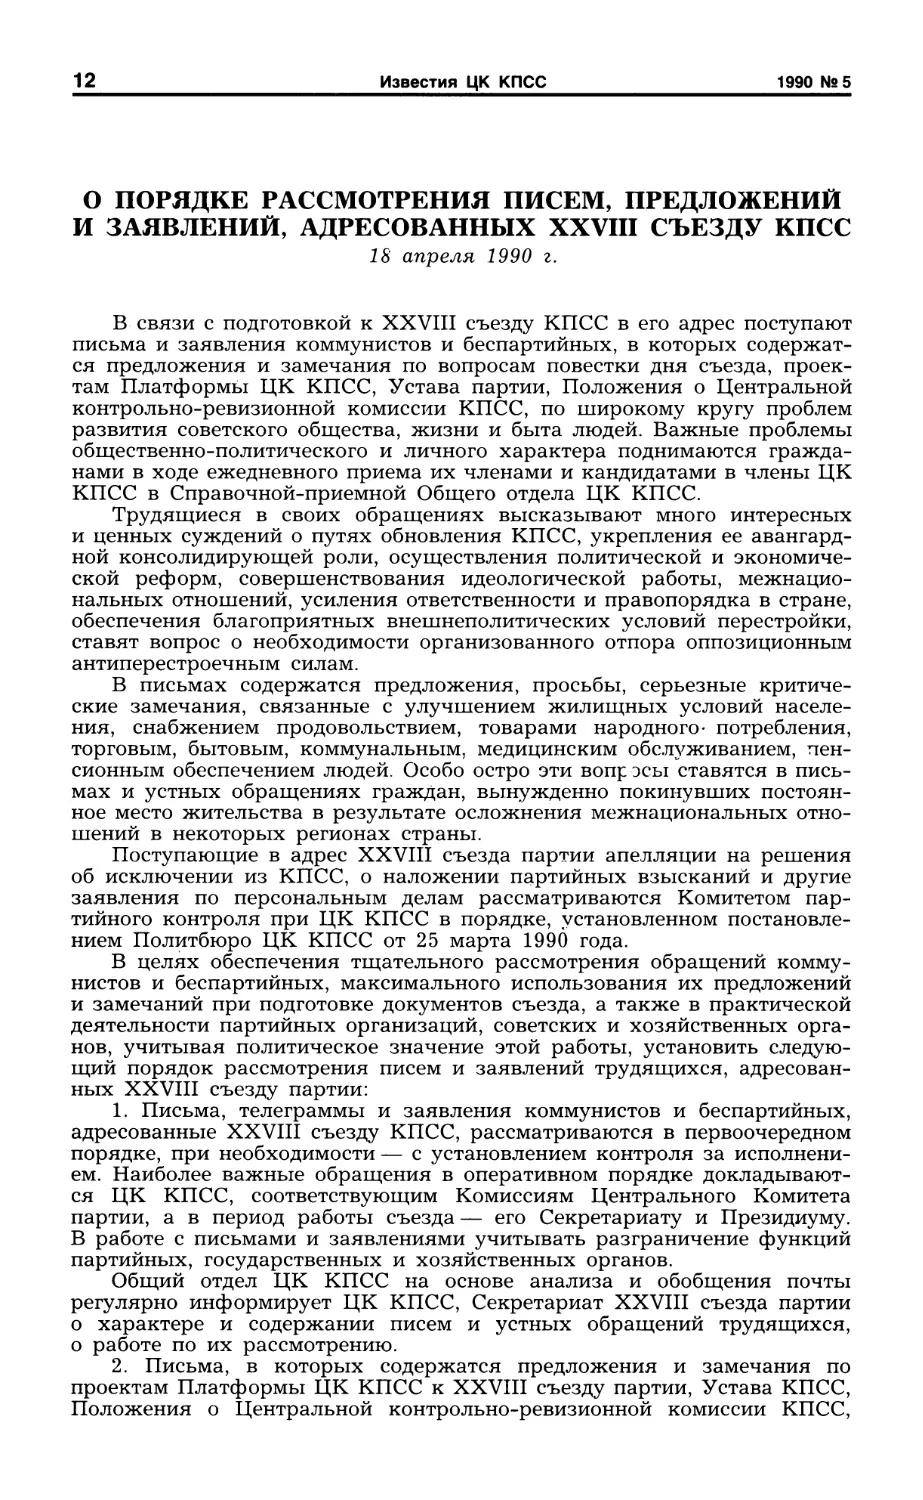 О порядке рассмотрения писем, предложений и заявлений, адресованных XXVIII съезду КПСС. 18 апреля 1990 г